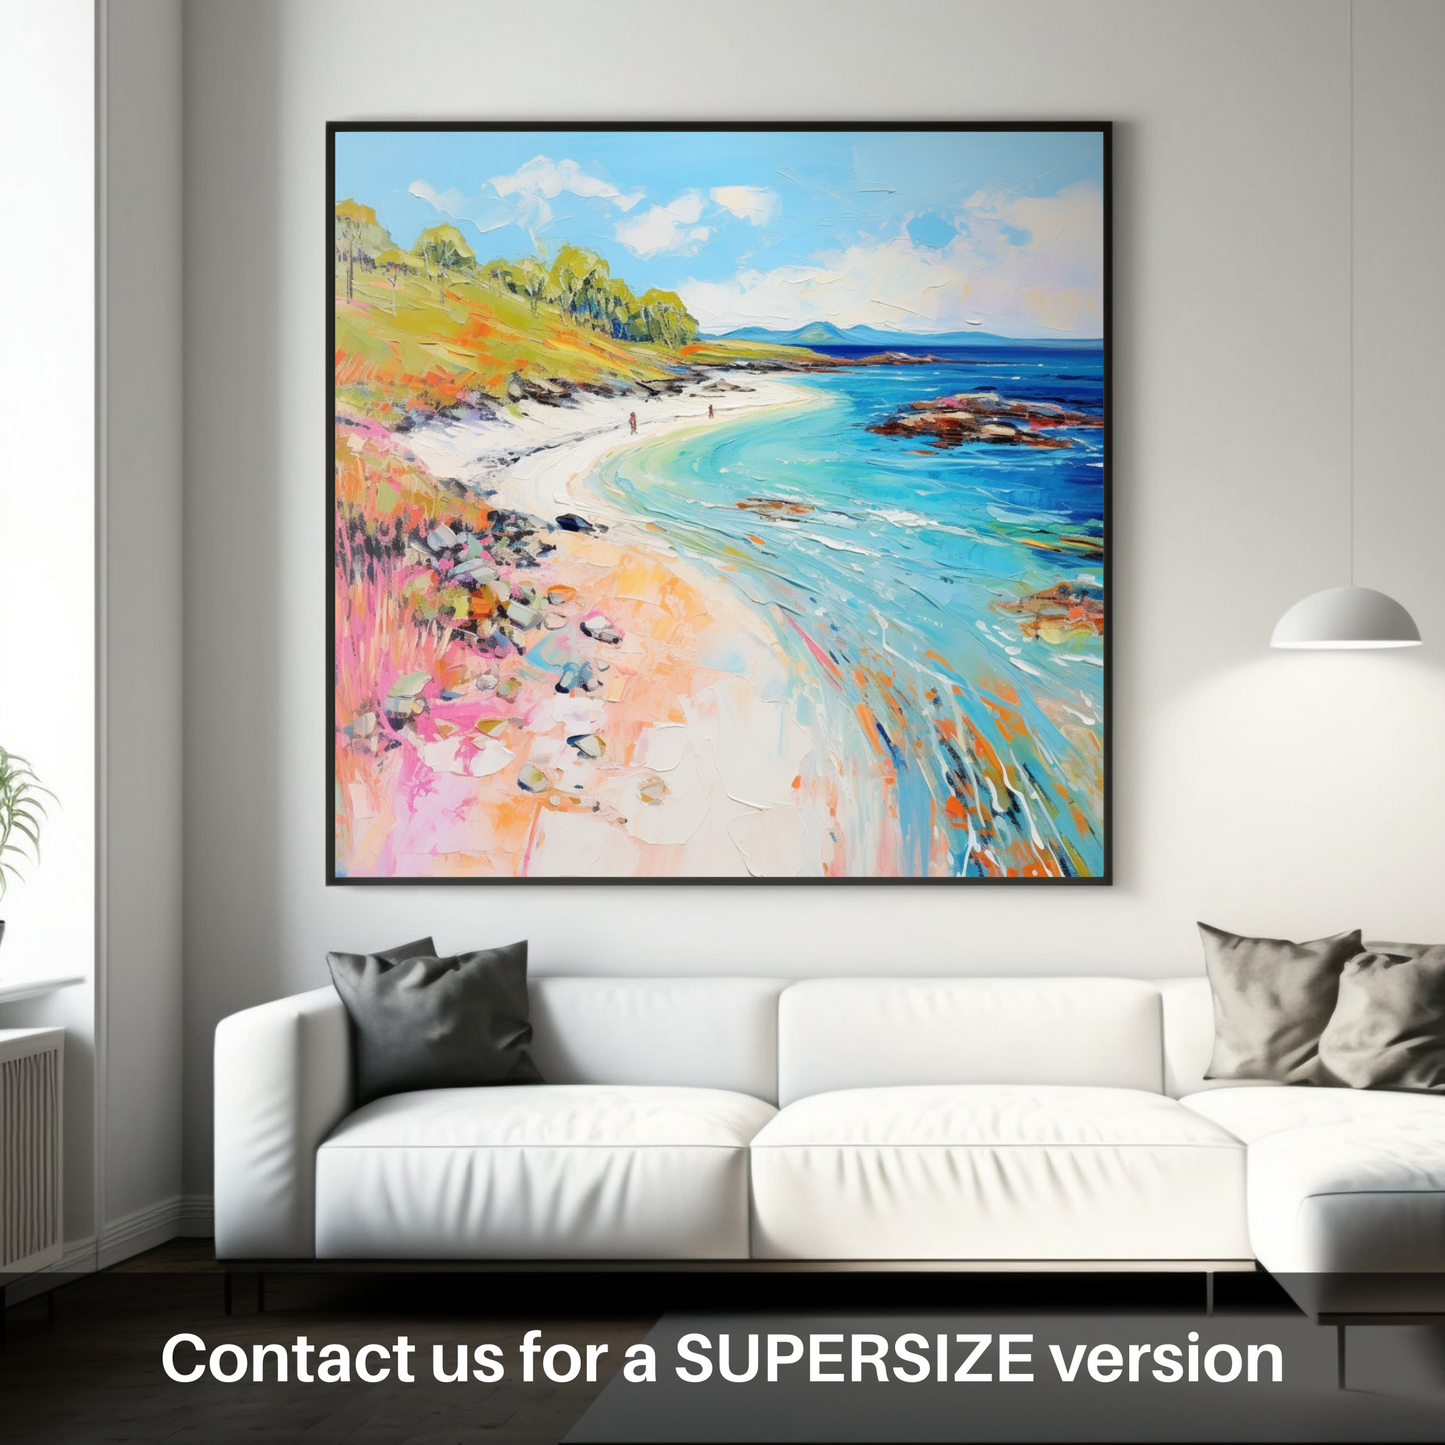 Huge supersize print of Coral Beach, Isle of Skye in summer